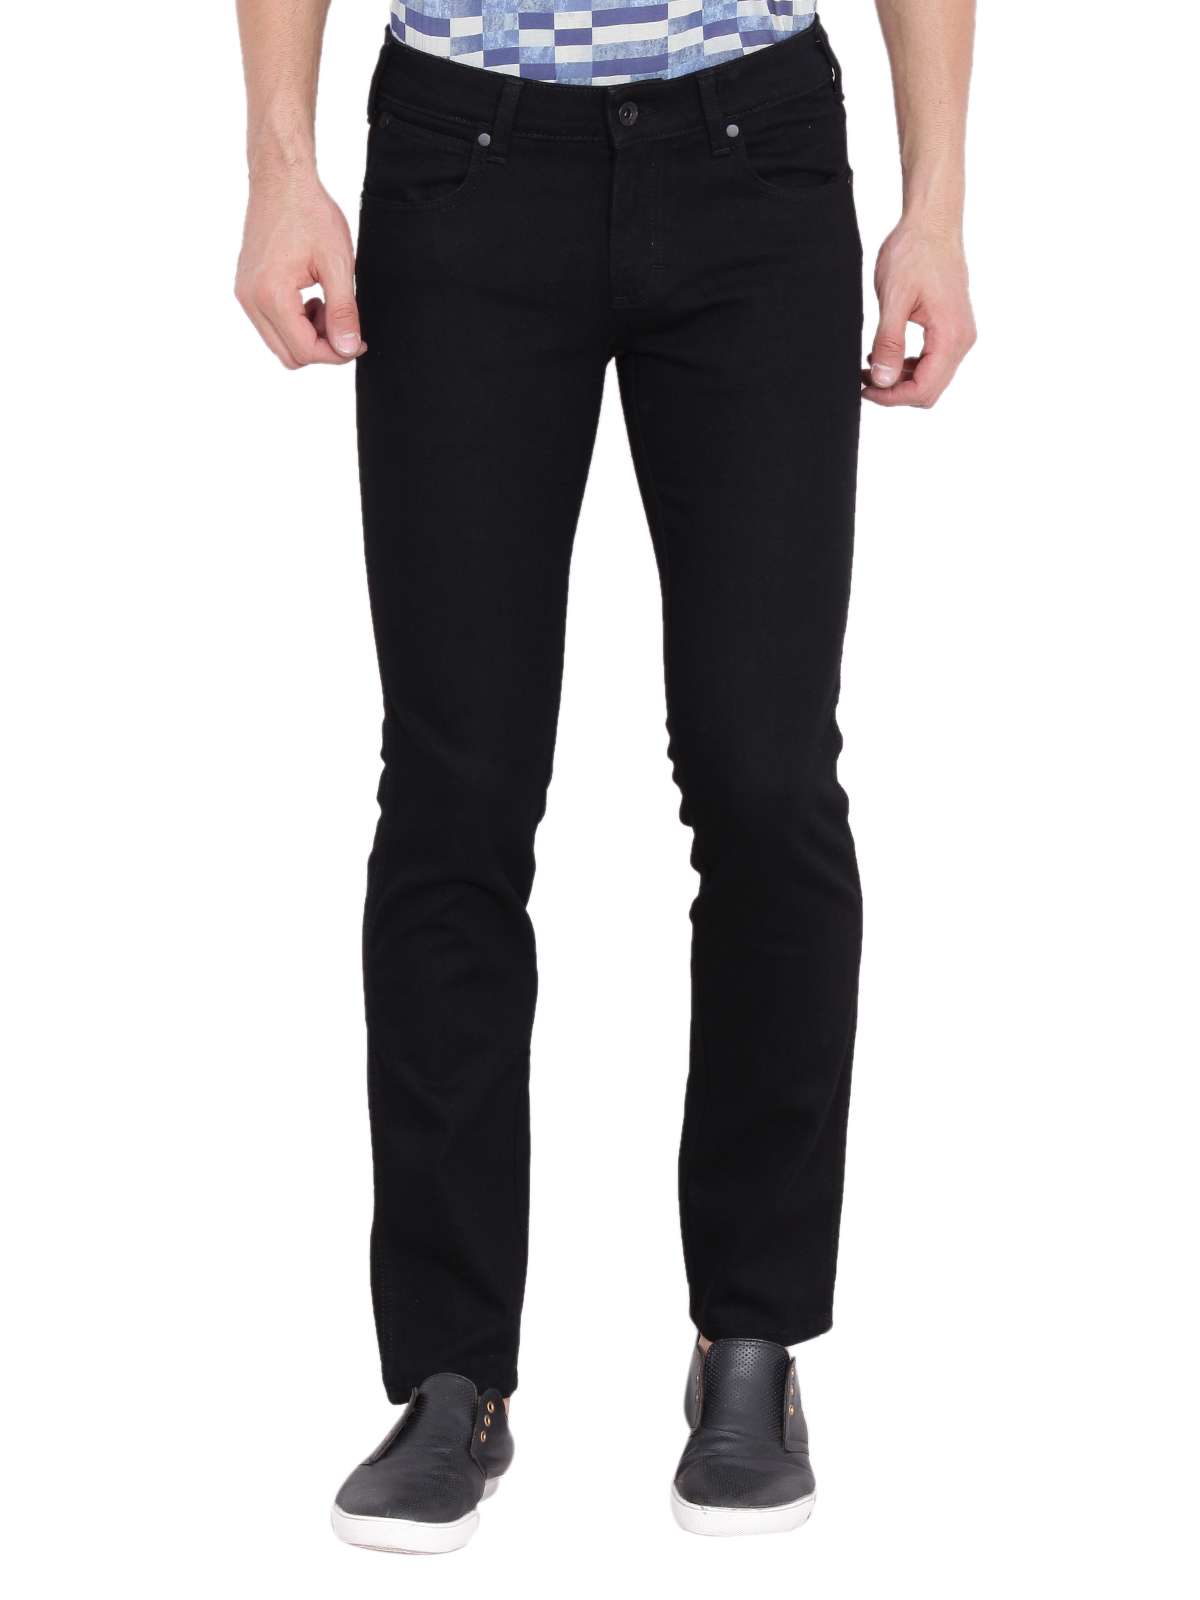 Buy Wrangler Men's Black Slim Fit Jeans Online @ ₹2495 from ShopClues